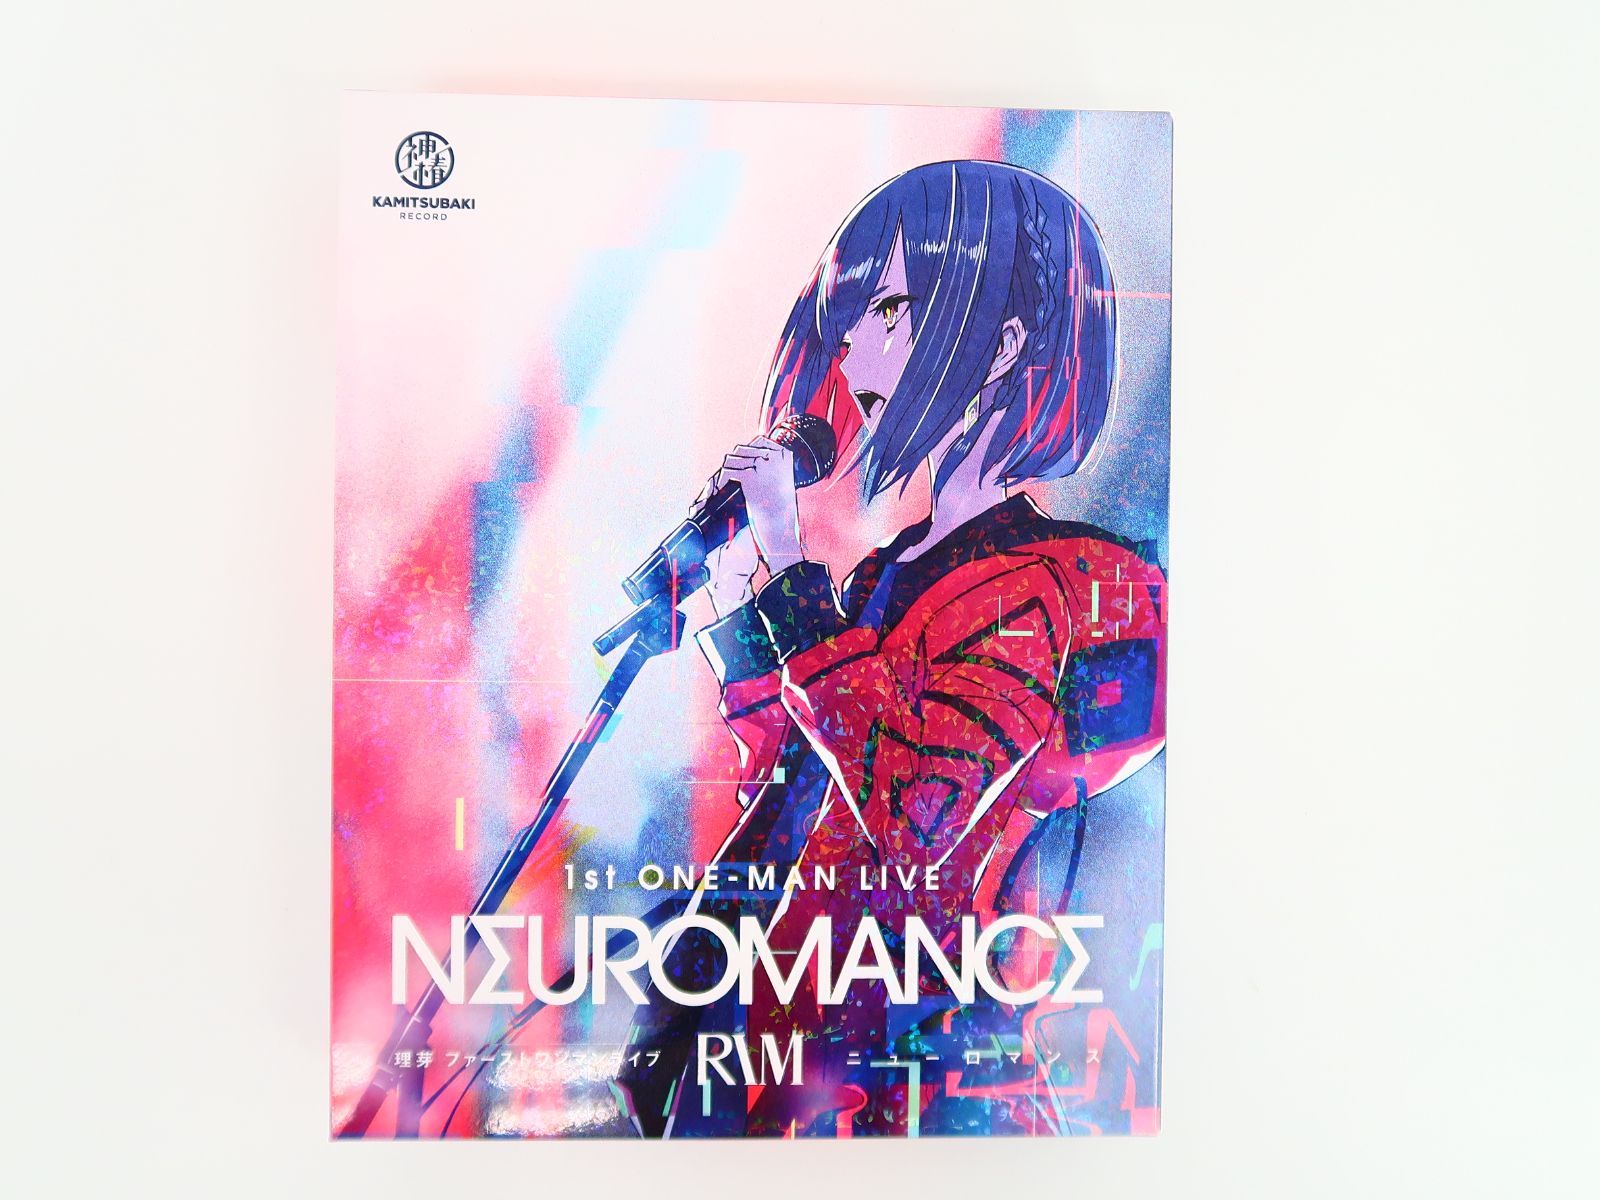 理芽1st ONE-MAN LIVE NEUROMANCE Blu-ray本・音楽・ゲーム